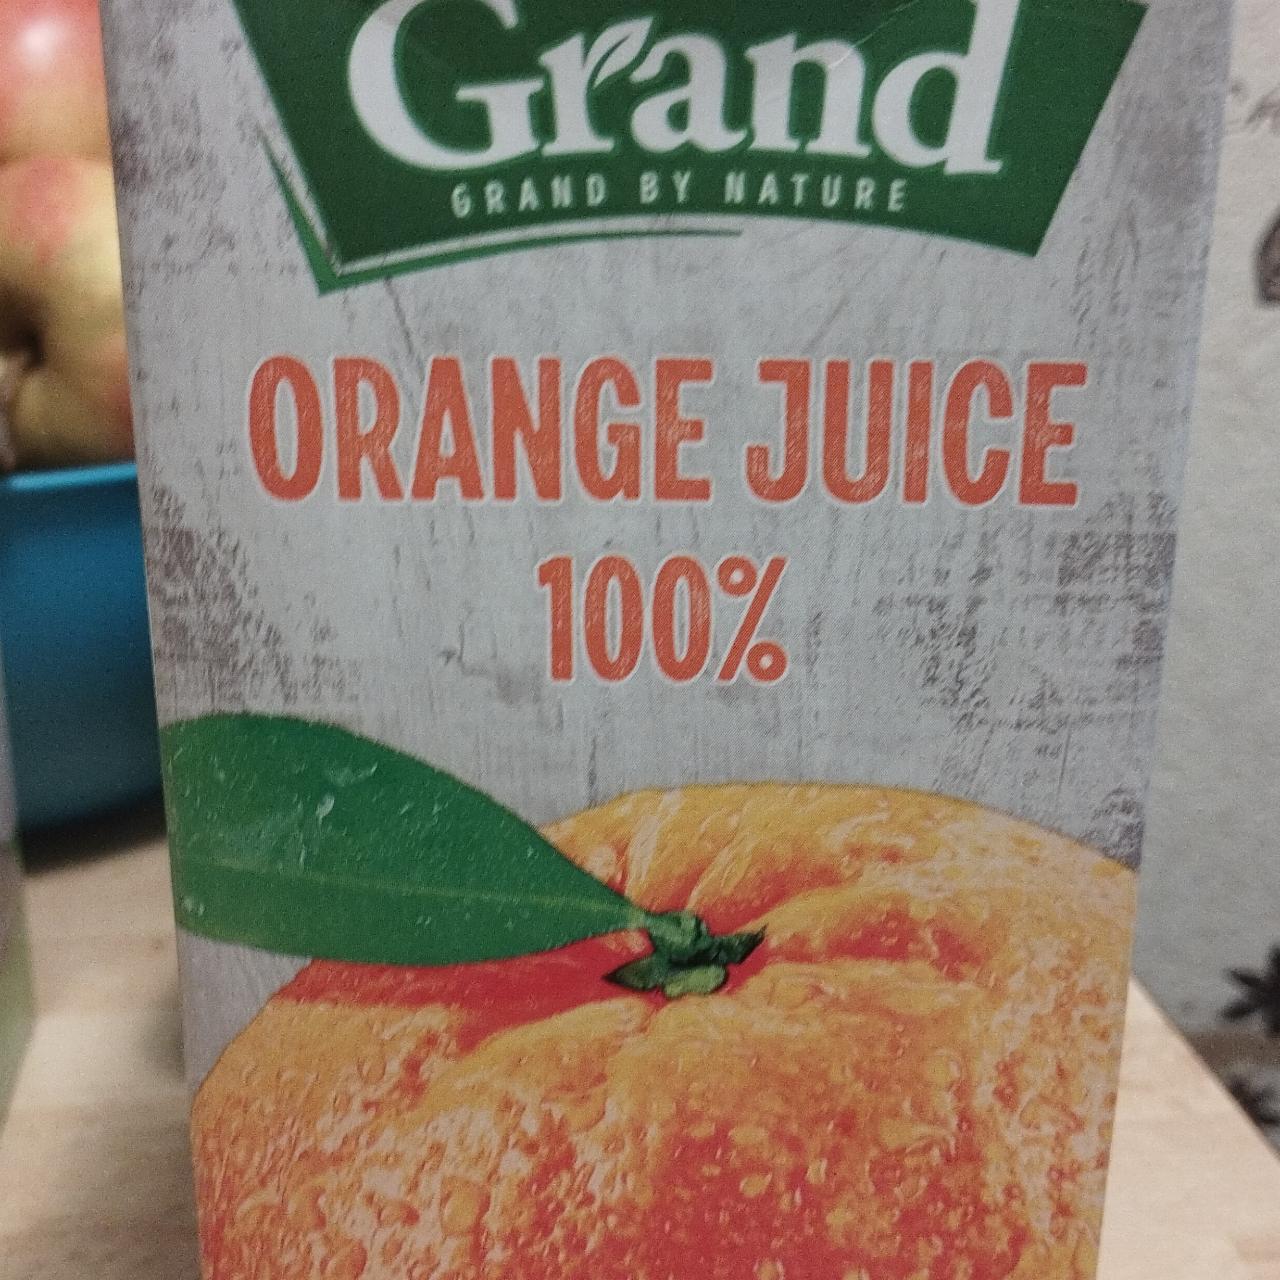 Zdjęcia - Orange juice 100% Grand